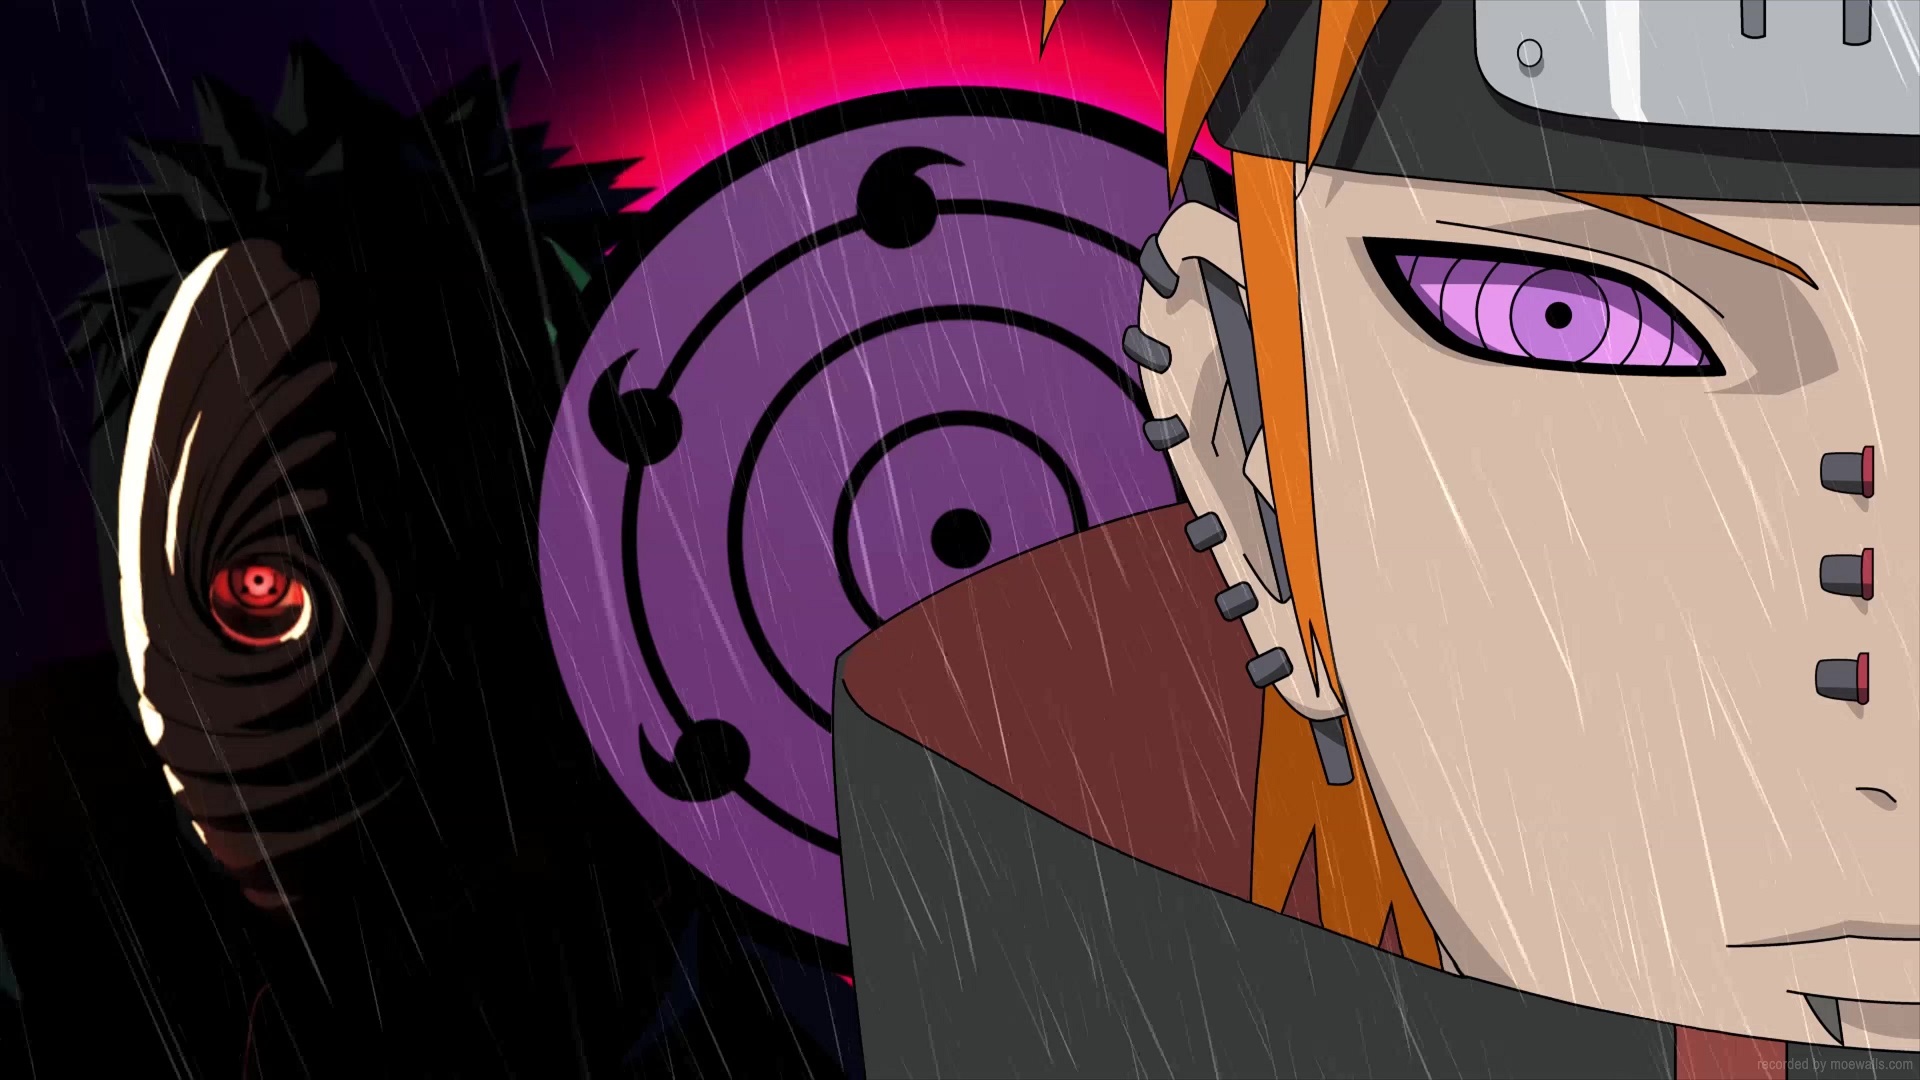 Mô hình giấy Anime Chibi Pain  Naruto Shippuden OS27  Giá Tiki khuyến  mãi 4500đ  Mua ngay  Tư vấn mua sắm  tiêu dùng trực tuyến Bigomart